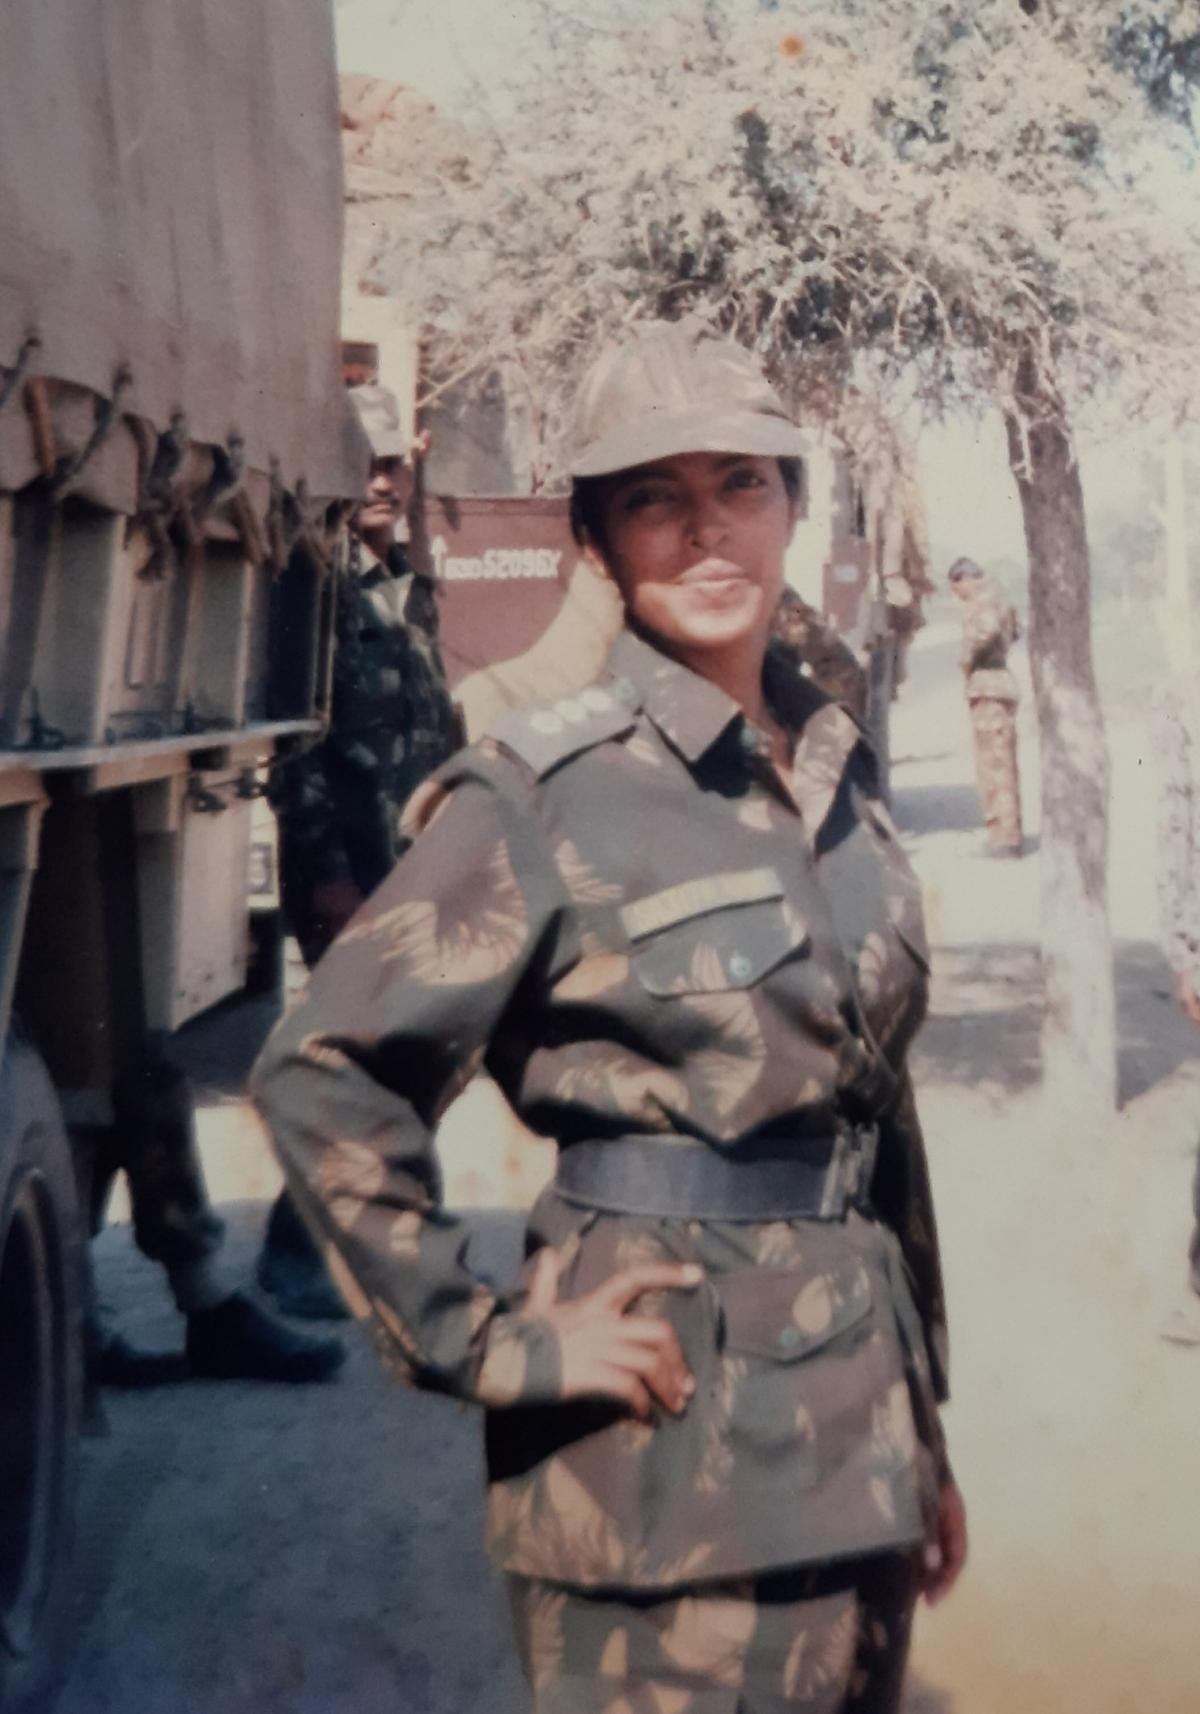 सजिता नायर, भारतीय सेना में अपनी वर्दी में शामिल होने वाली पहली महिलाओं में से एक थीं।  वह अब एक लेखिका हैं. 